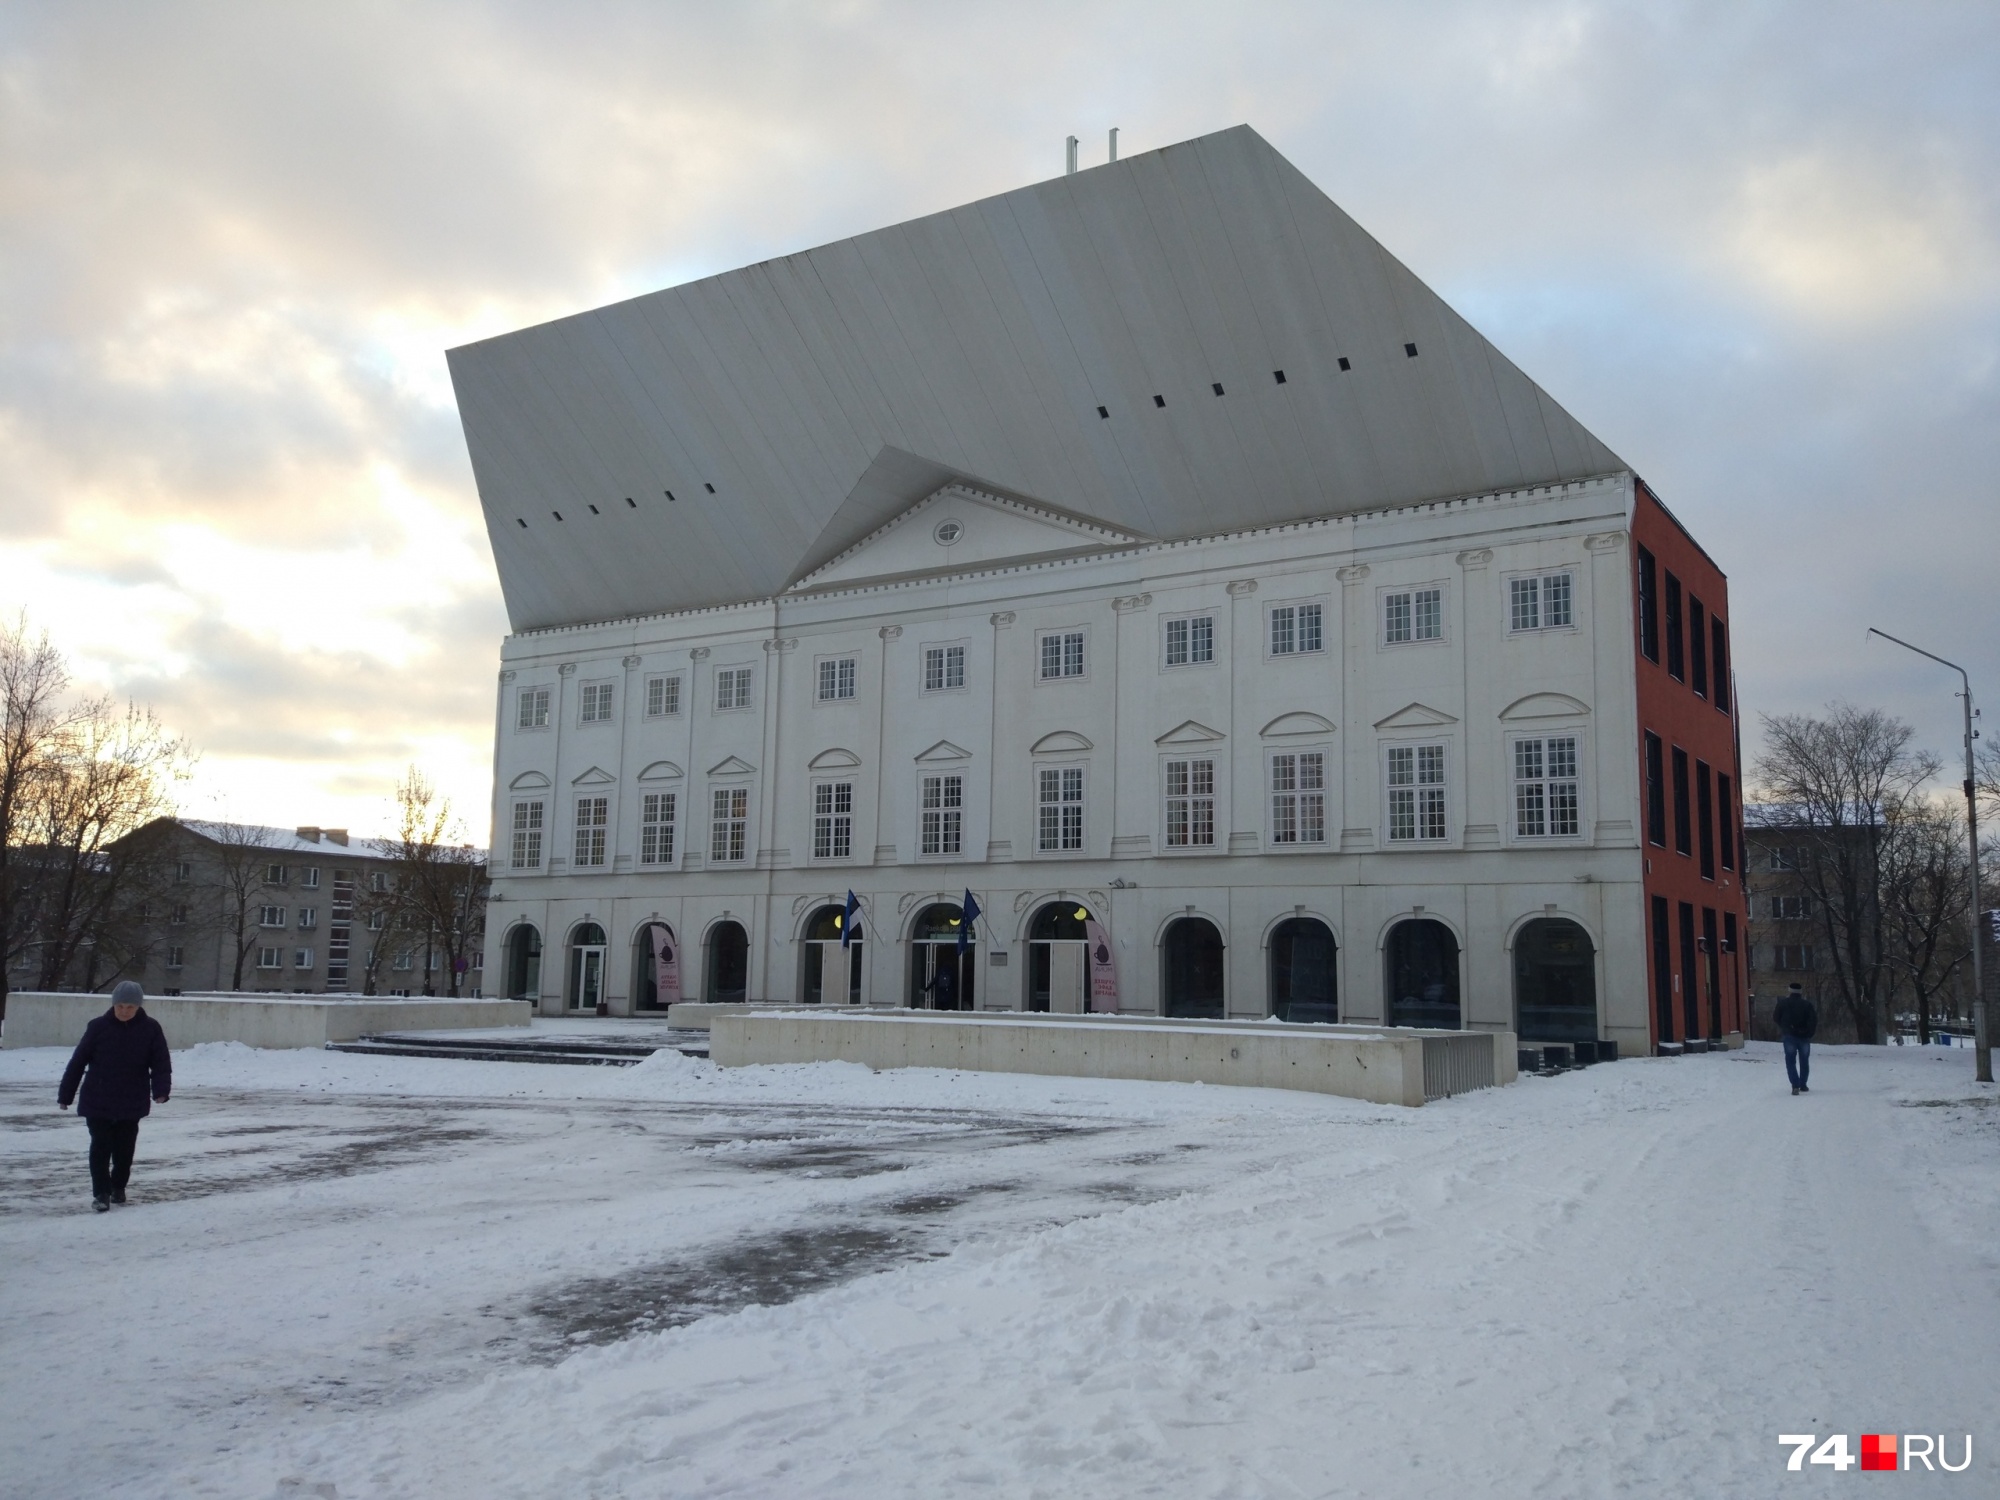 А это необычное по архитектуре здание — колледж в Нарве, где учится Стас